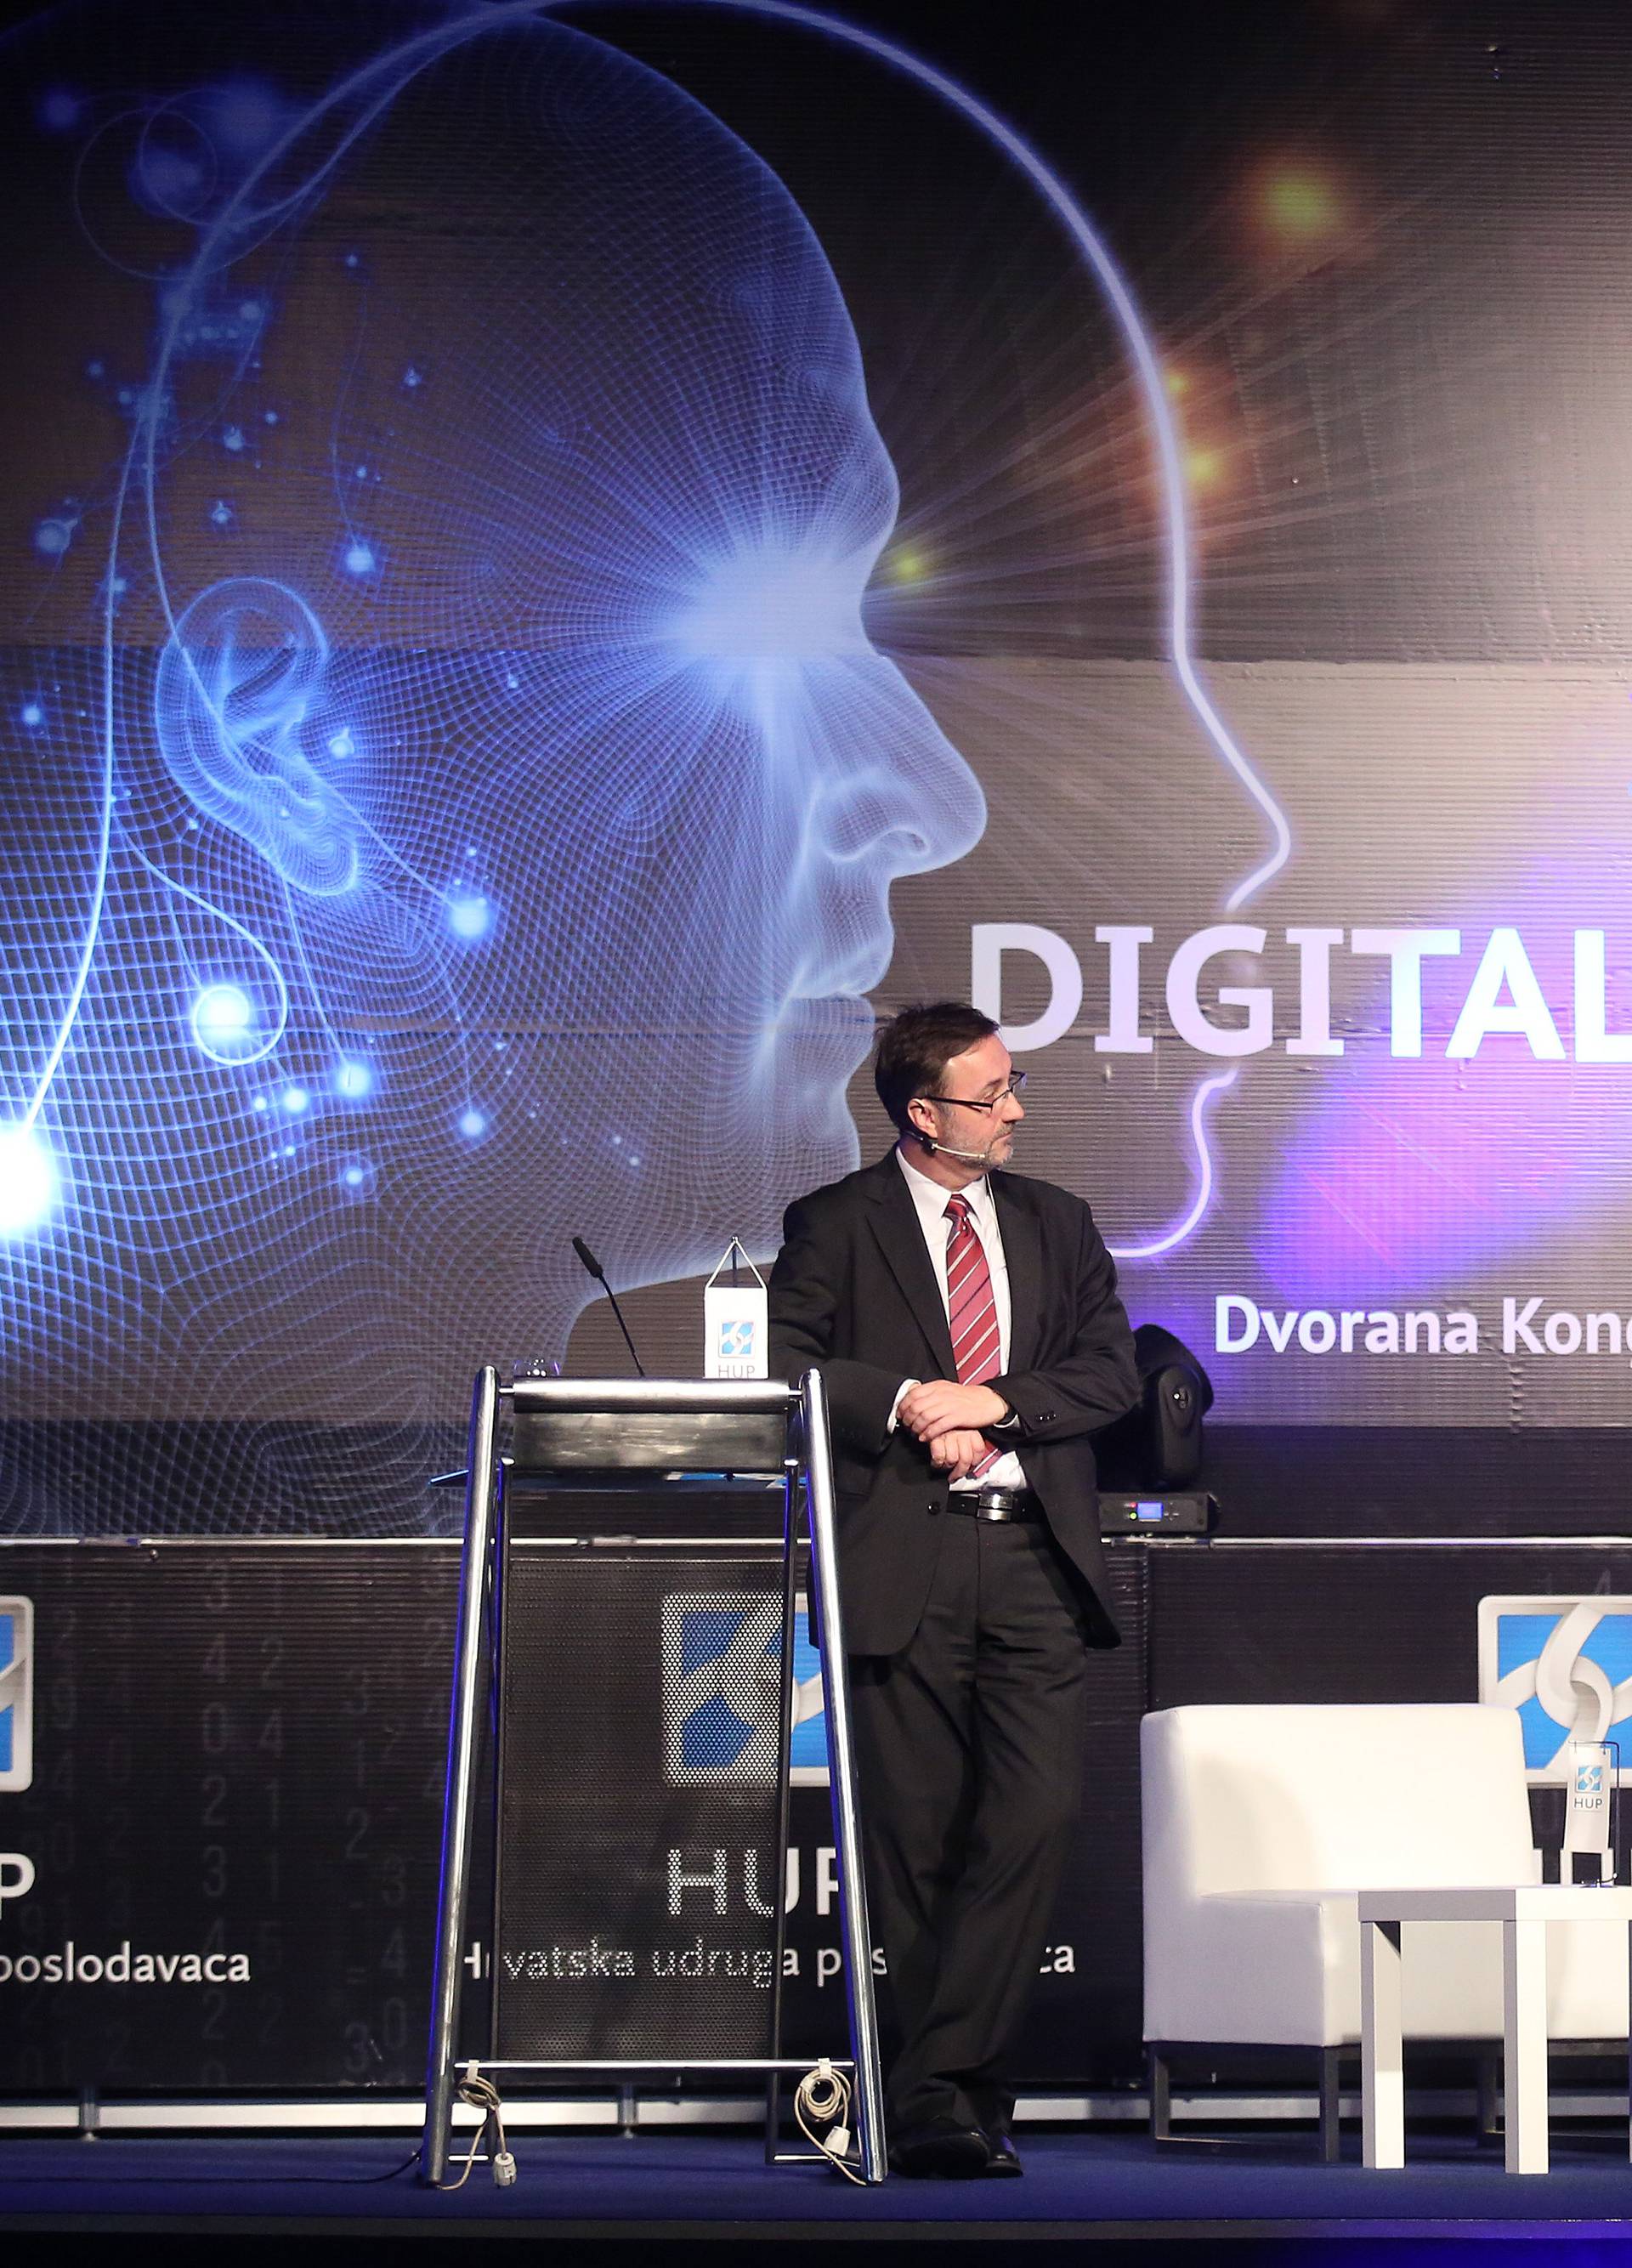 Nova era: Digitalno poslovanje je ključ uspjeha u budućnosti